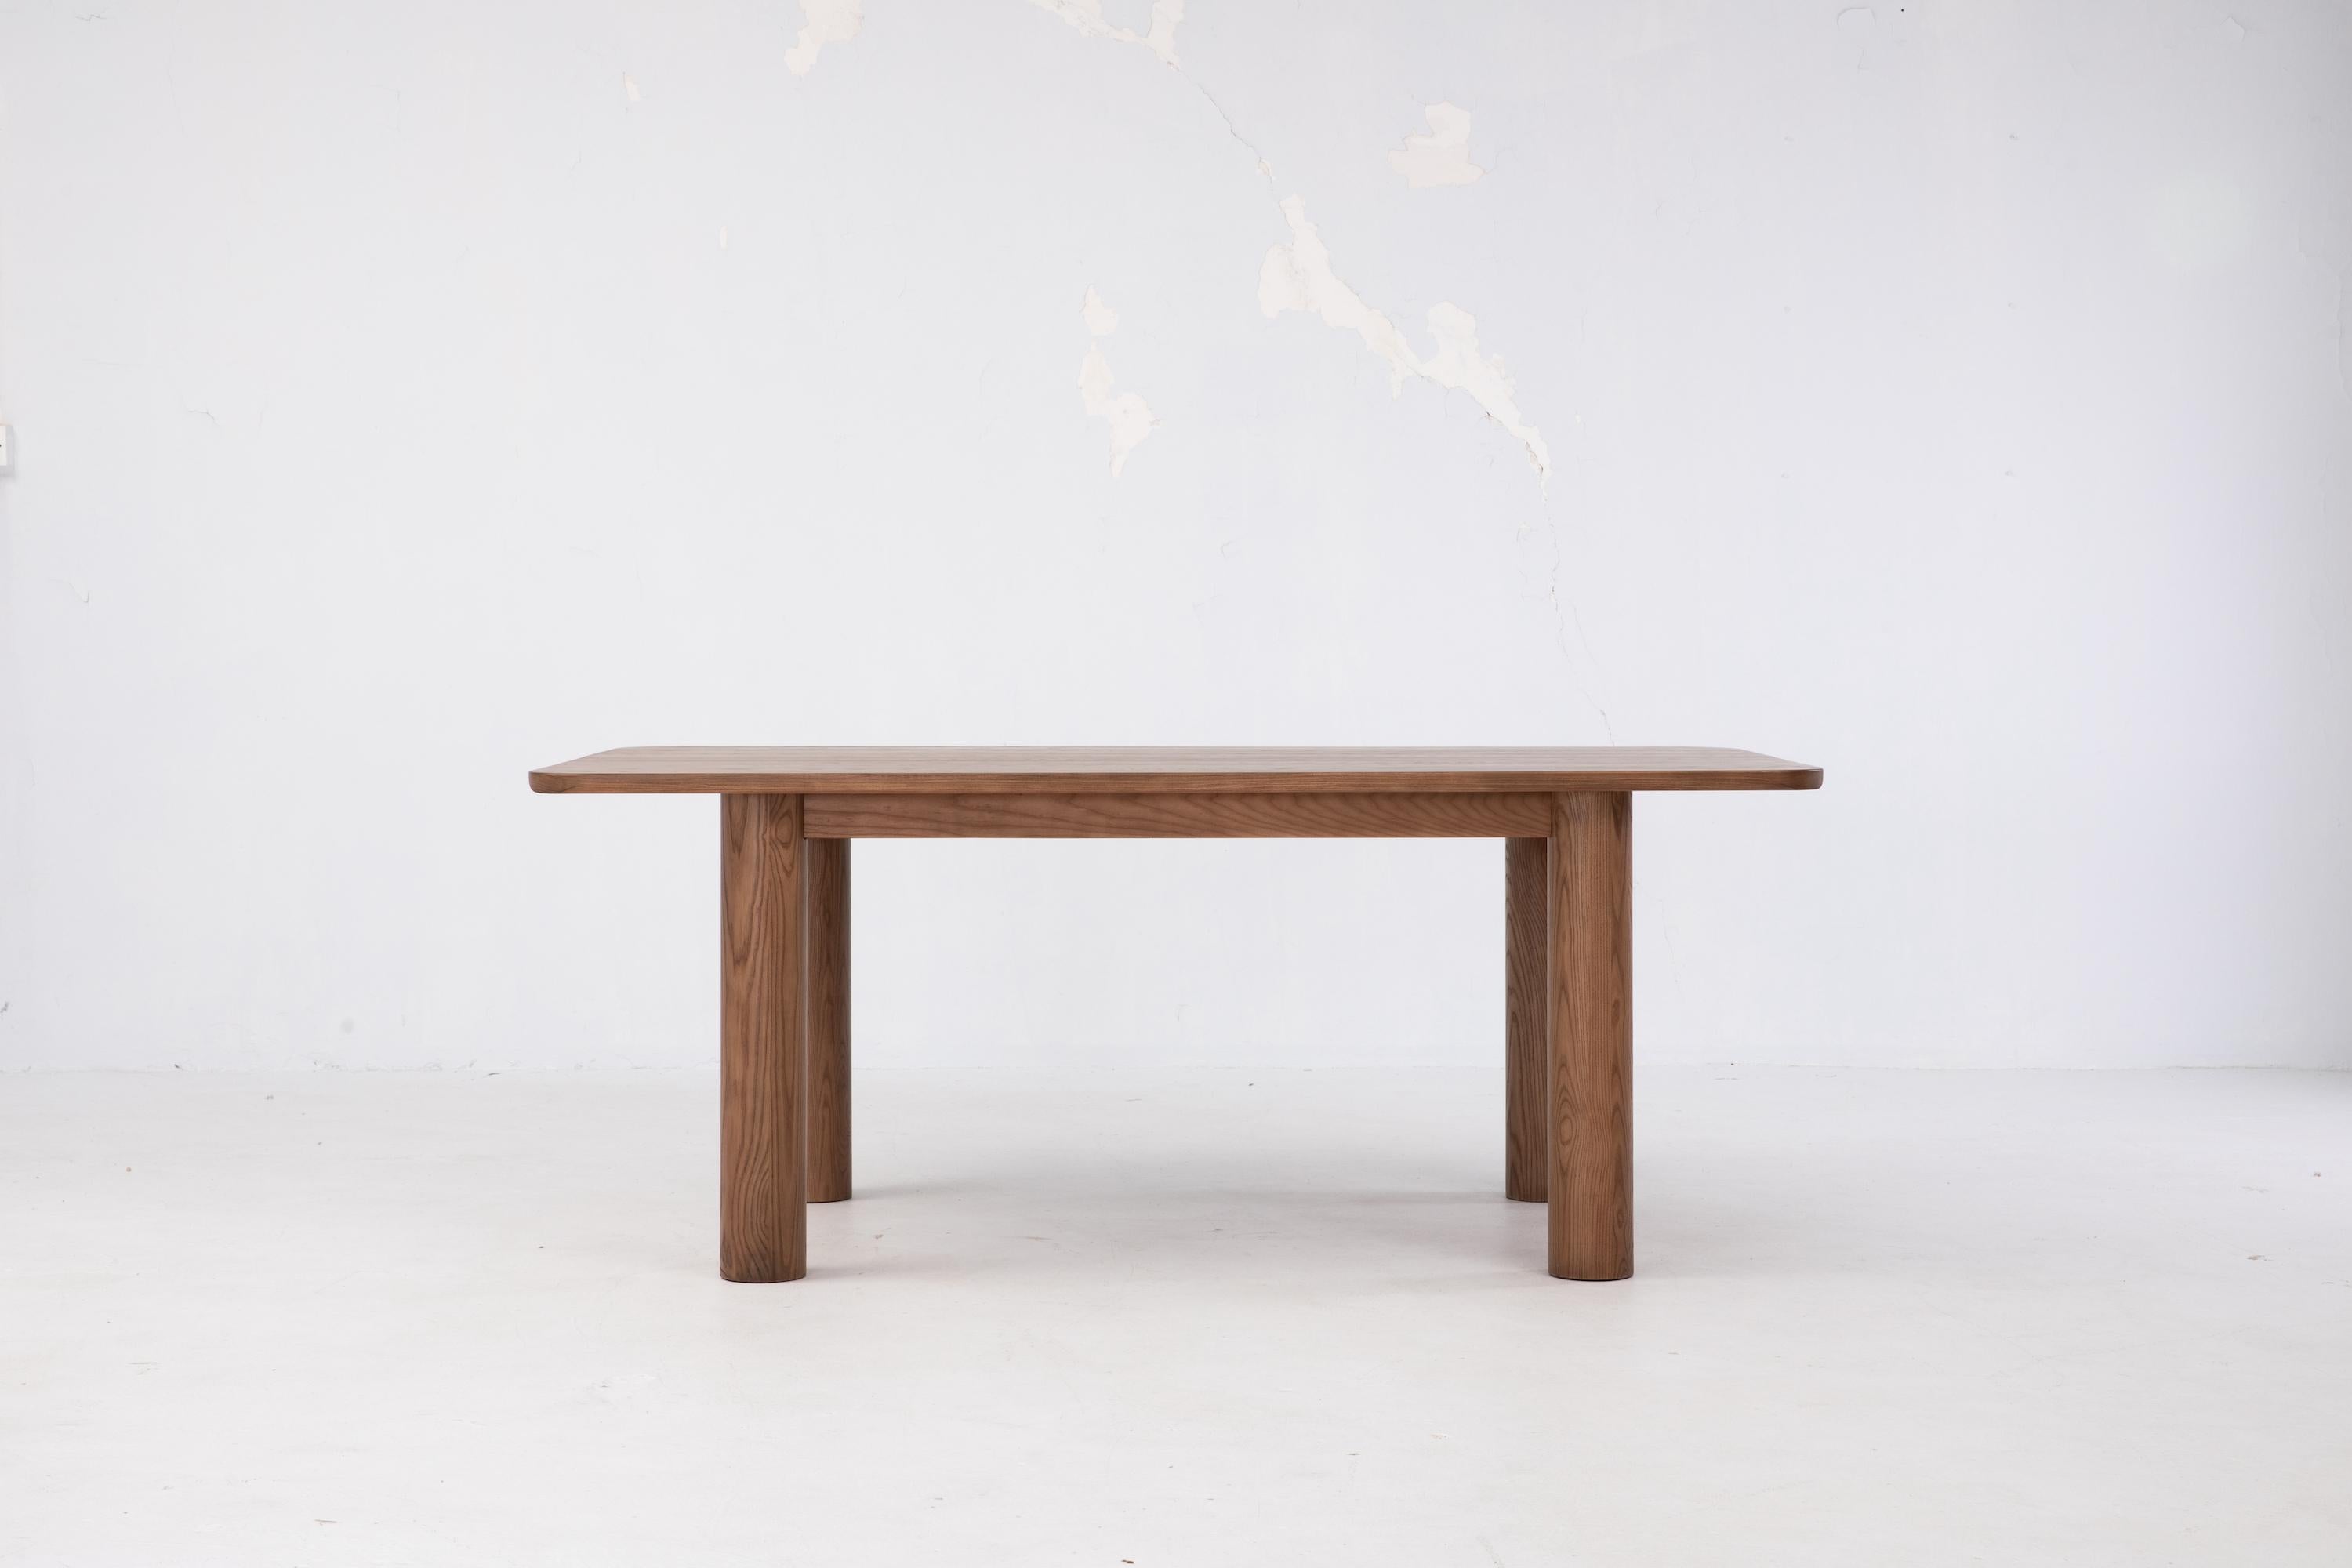 Der Arc Esstisch ist aus massiver FSC® American White Ash gefertigt. Dieser Tafelaufsatz ist für das Leben rund um den Esstisch gedacht und verfügt über schöne Eckdetails mit breiten zylindrischen Beinen. Bitte beachten Sie, dass wir jedes Stück von